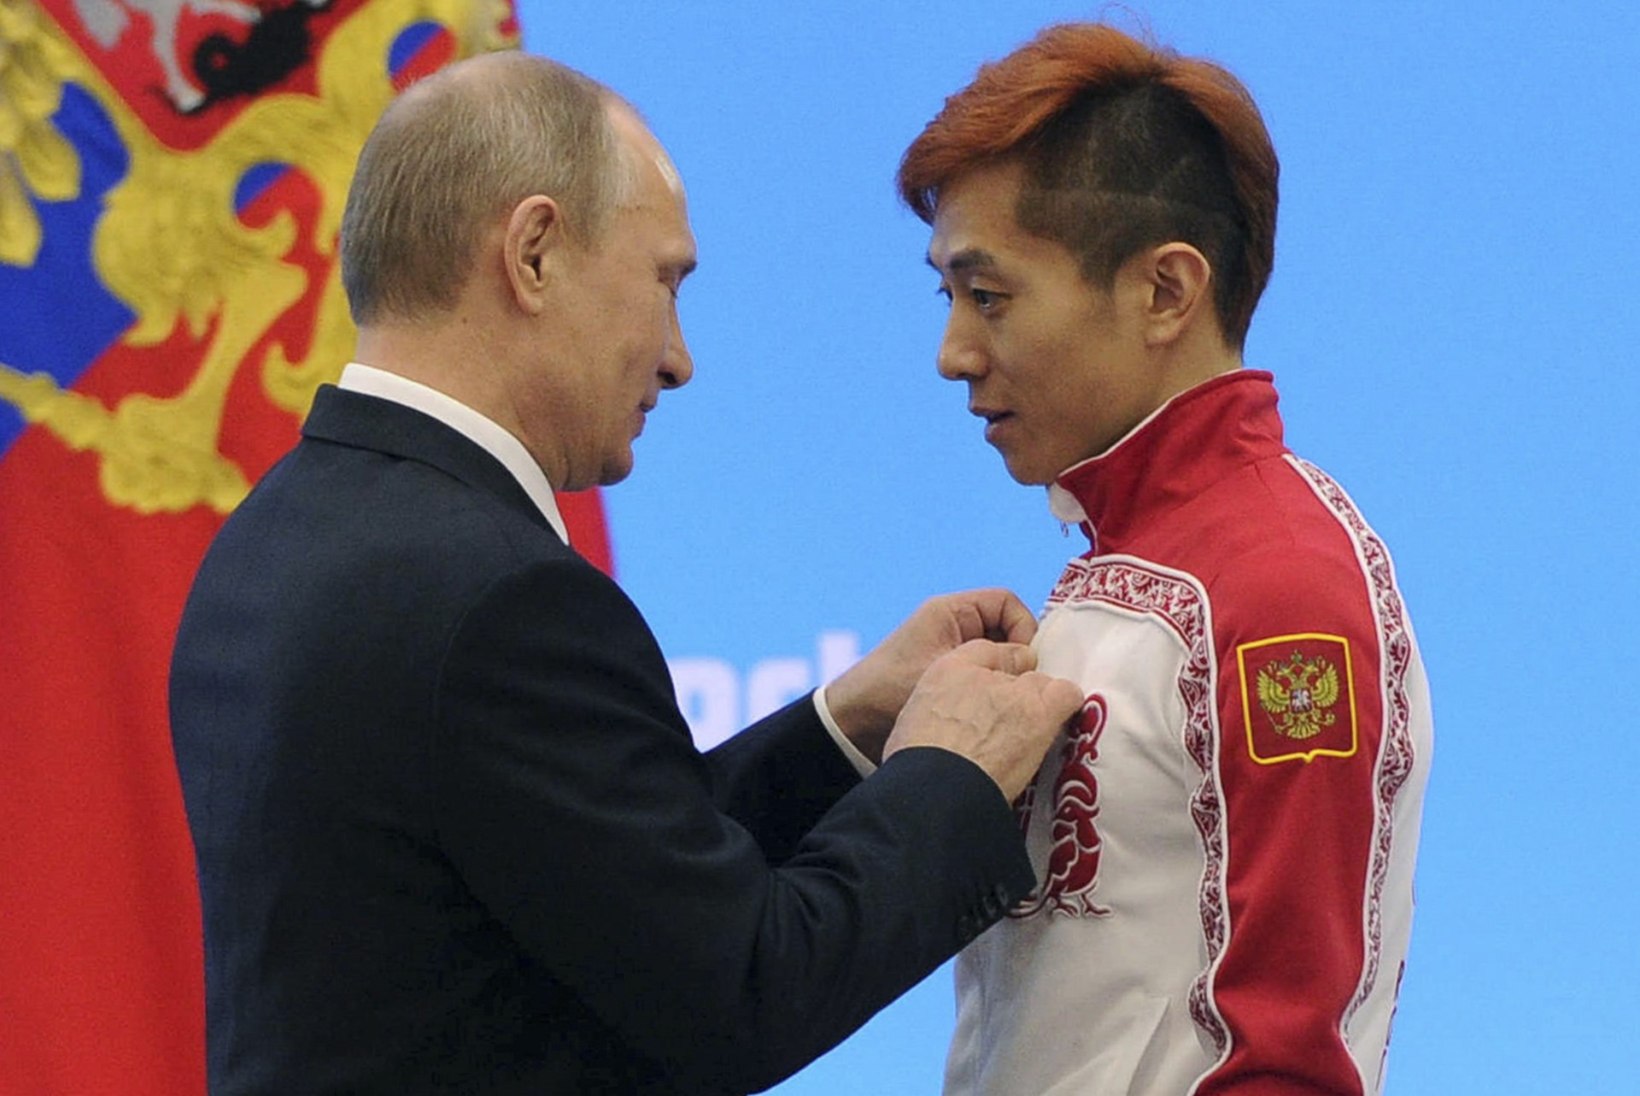 ROKi vastus paanikas venelastele: võime olümpialt eemale jätta ka sportlasi, kellel pole kunagi dopingujuhtumeid olnud